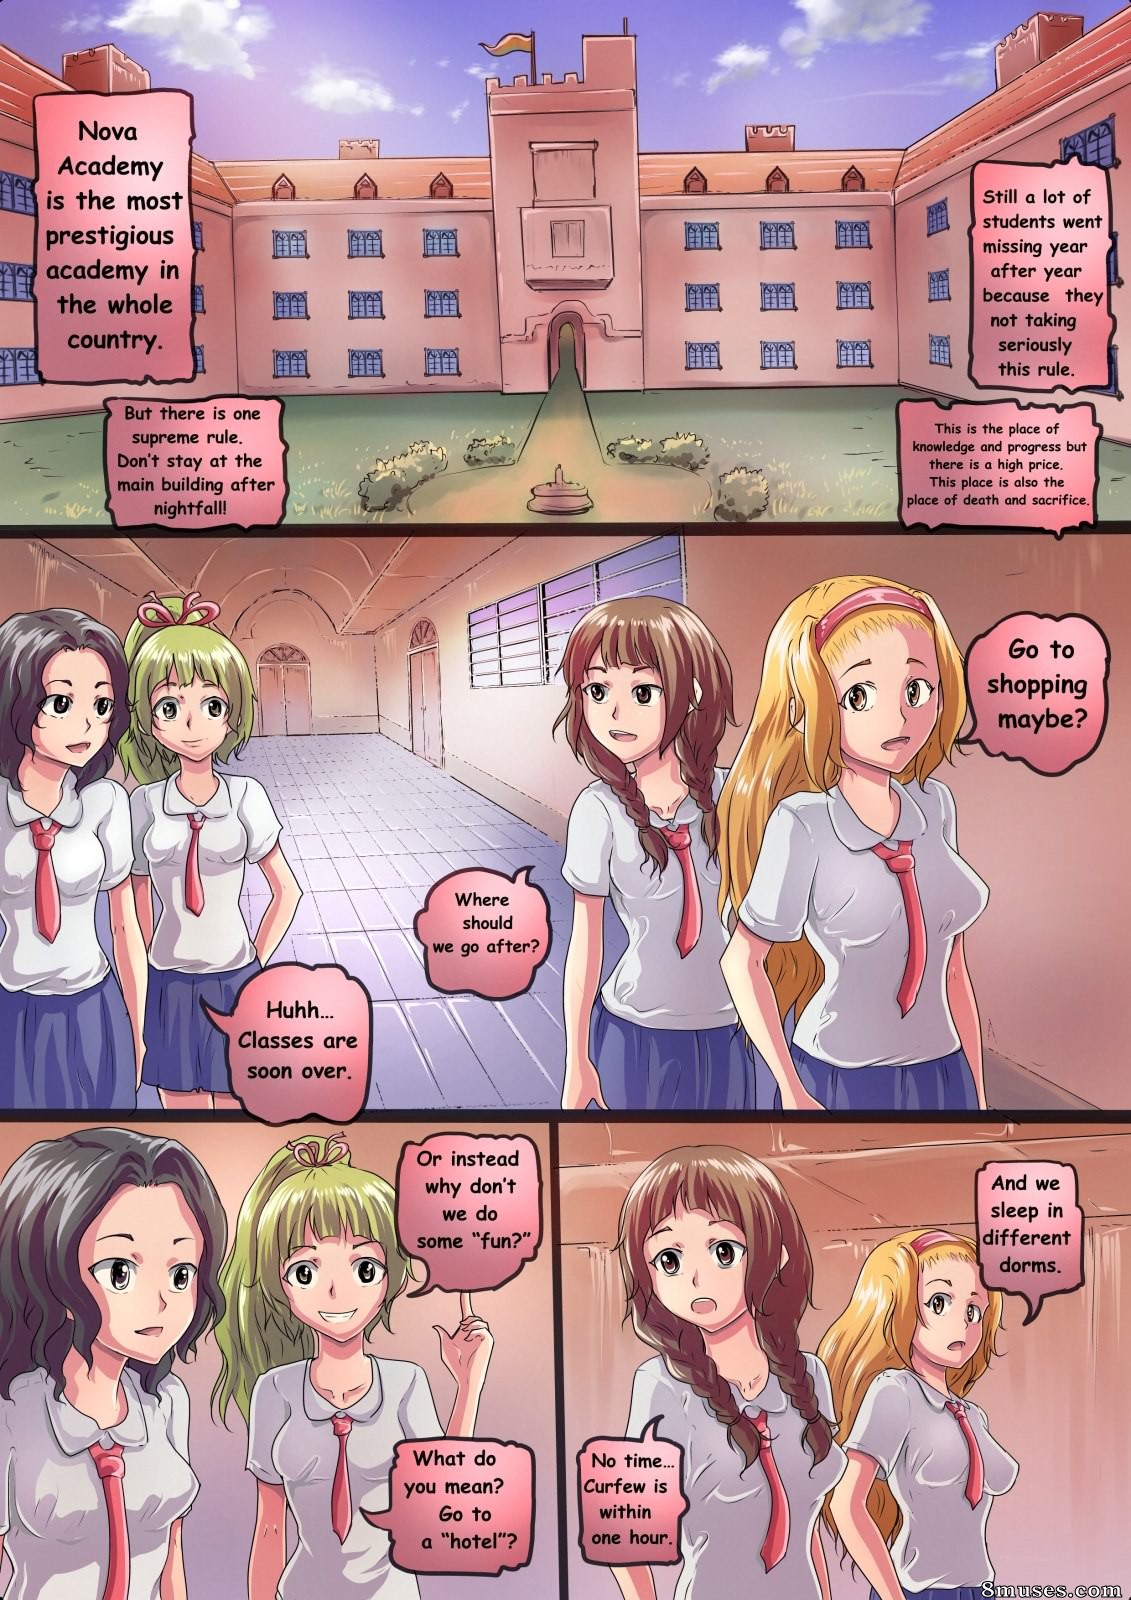 Cartoon Porn School - After School Story Issue 1 - 8muses Comics - Sex Comics and Porn Cartoons